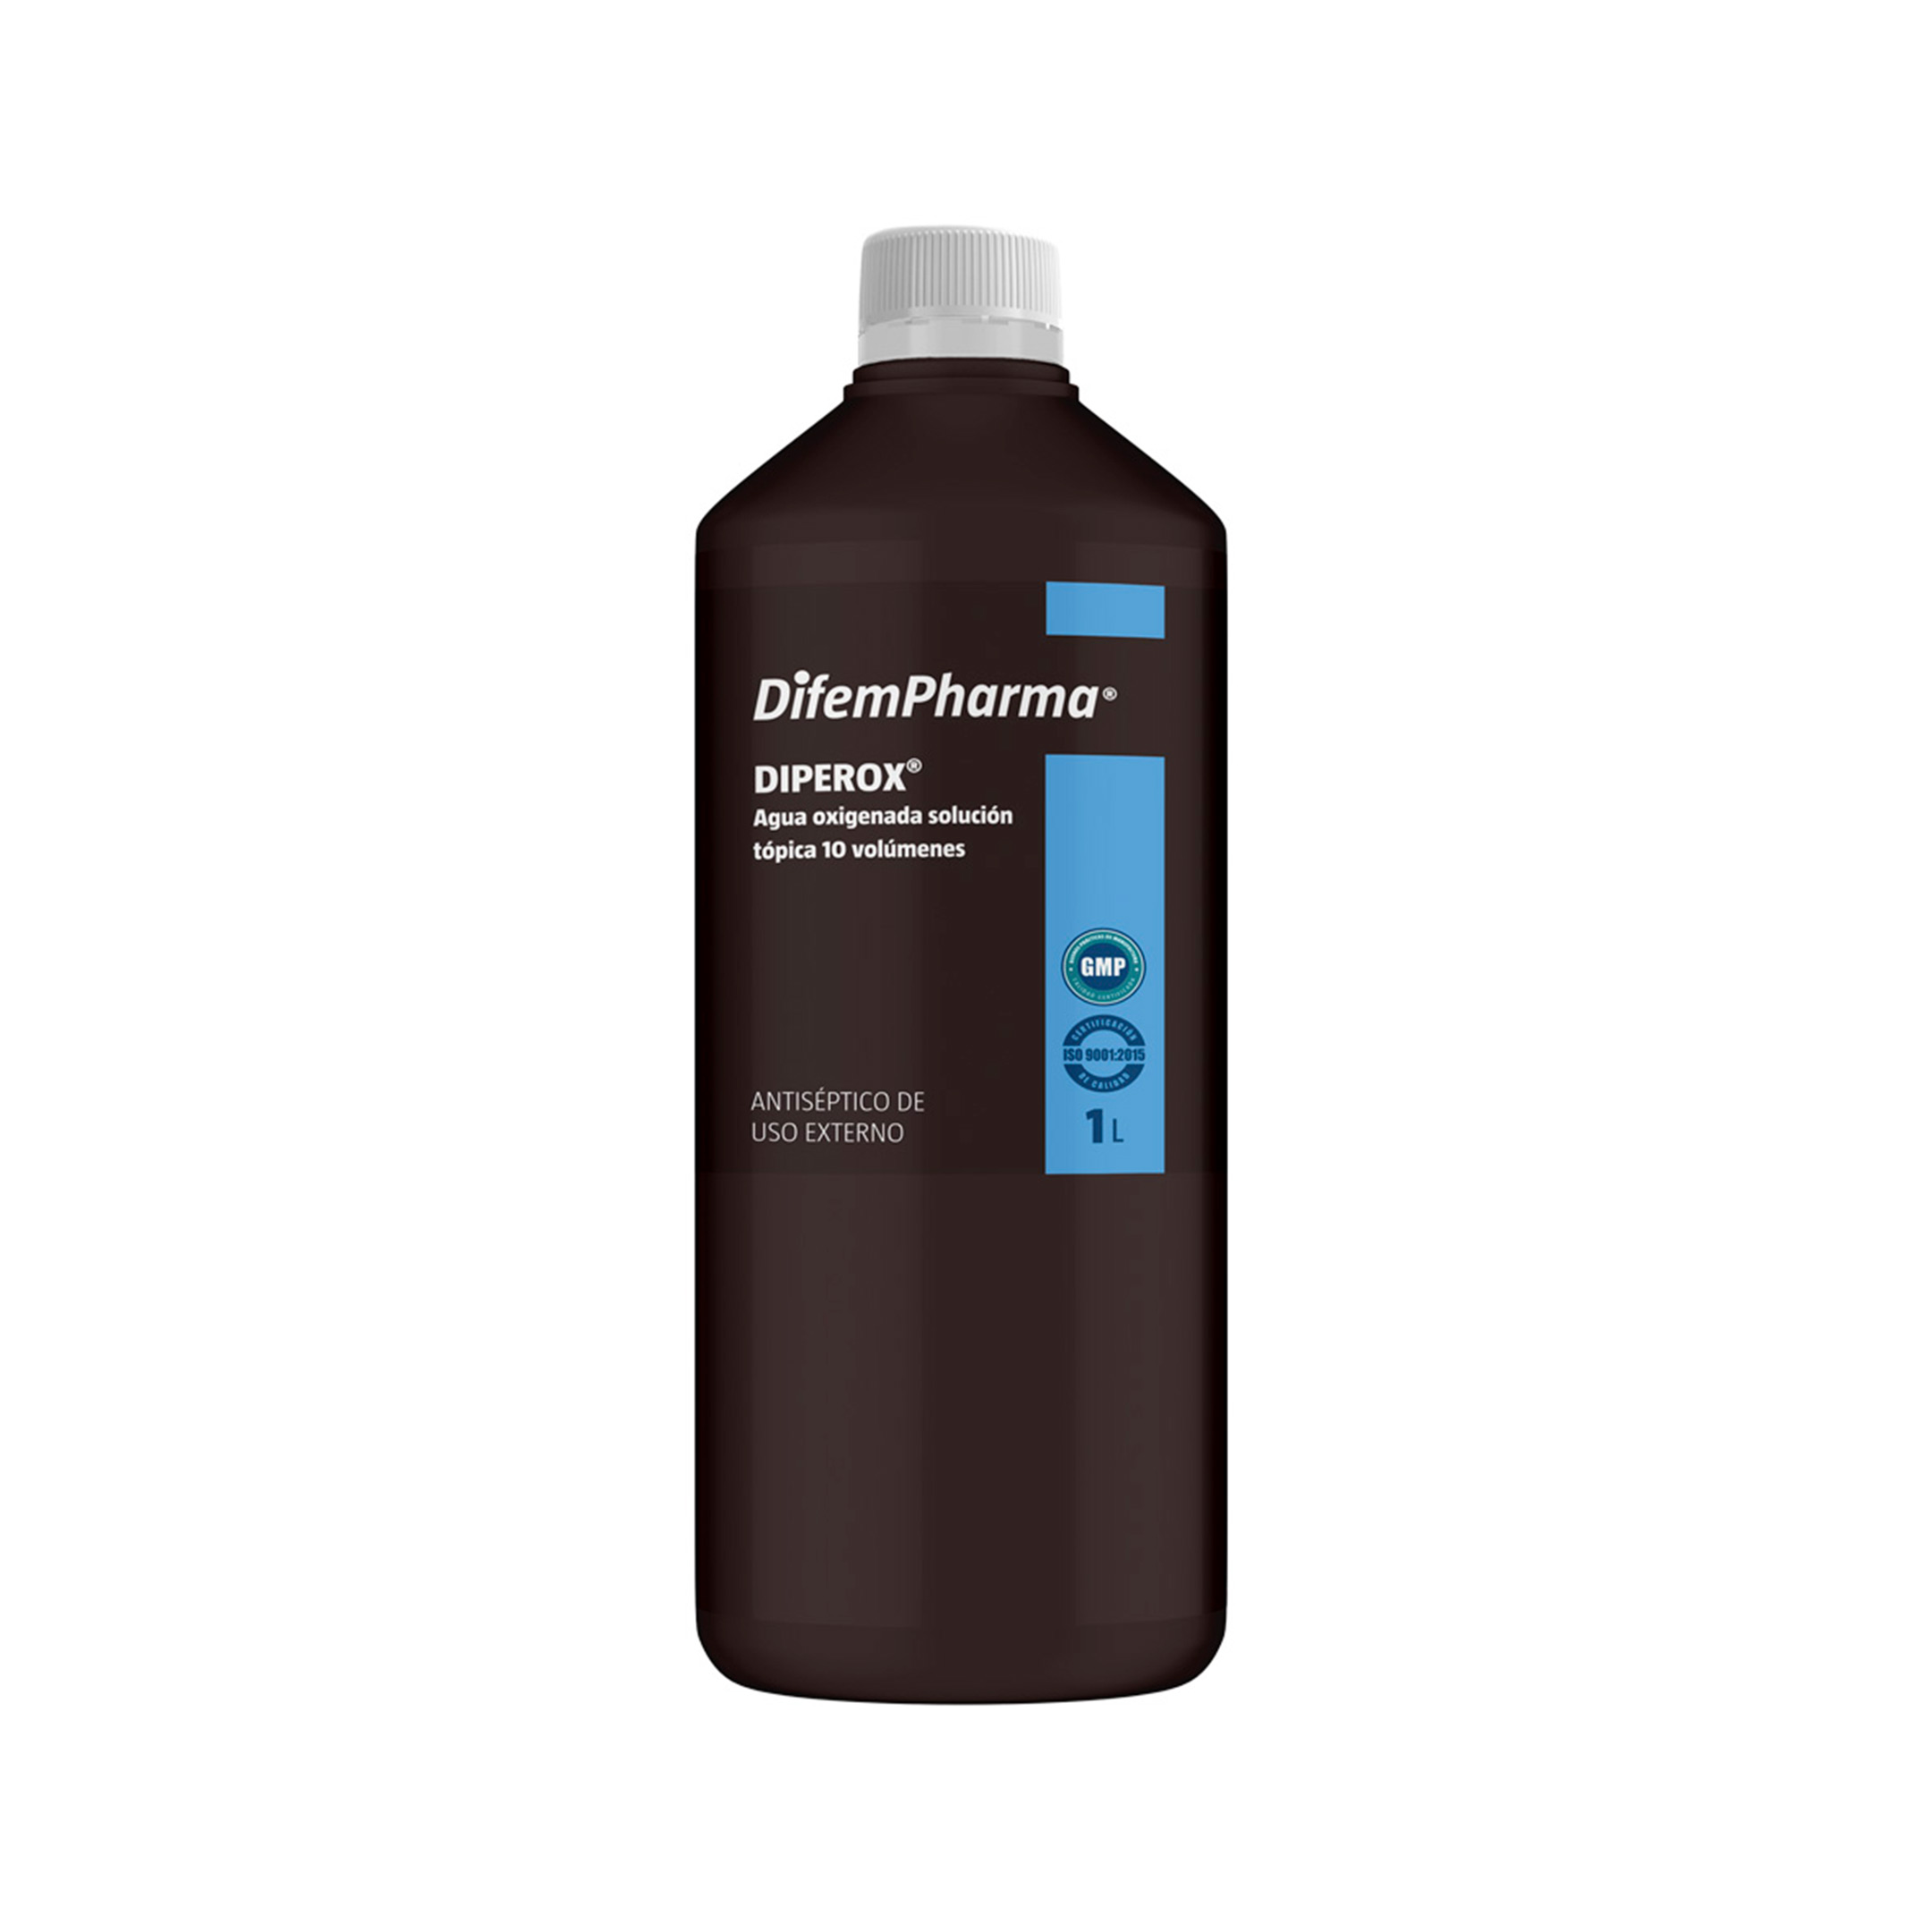 Diperox es un antiséptico de uso tópico en base a peróxido de hidrógeno. Se usa para la limpieza de heridas, úlceras e infecciones locales y como enguague bucal para el alivio de las molestias provocadas por ciertas infecciones bucofaríngeas.